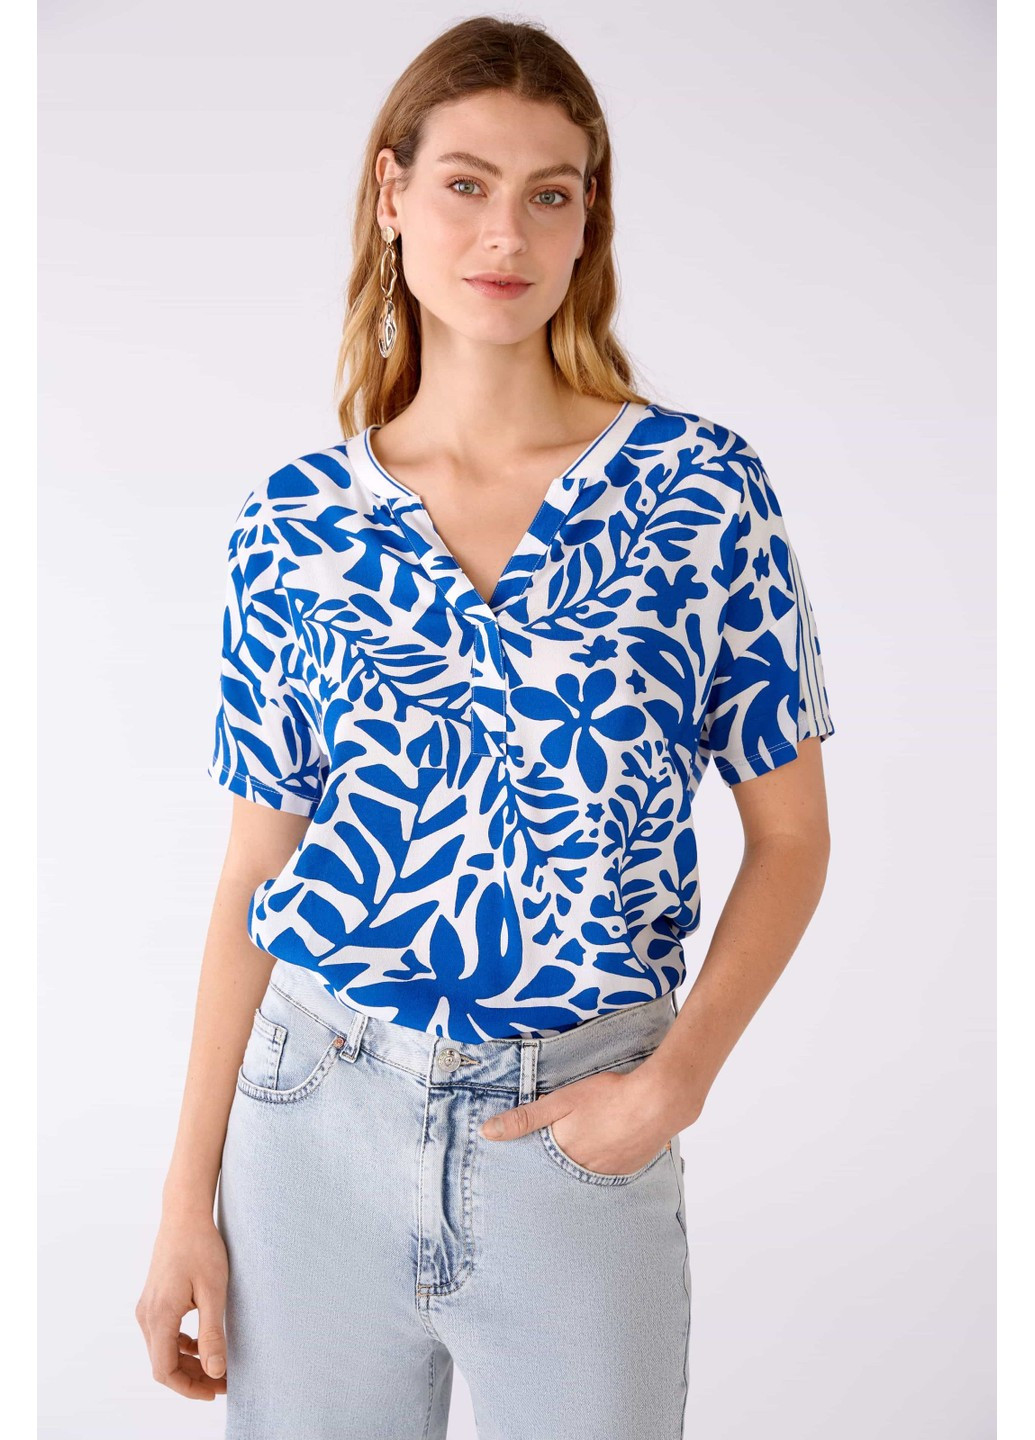 Комбинированная демисезонная женская блузка разные цвета Oui